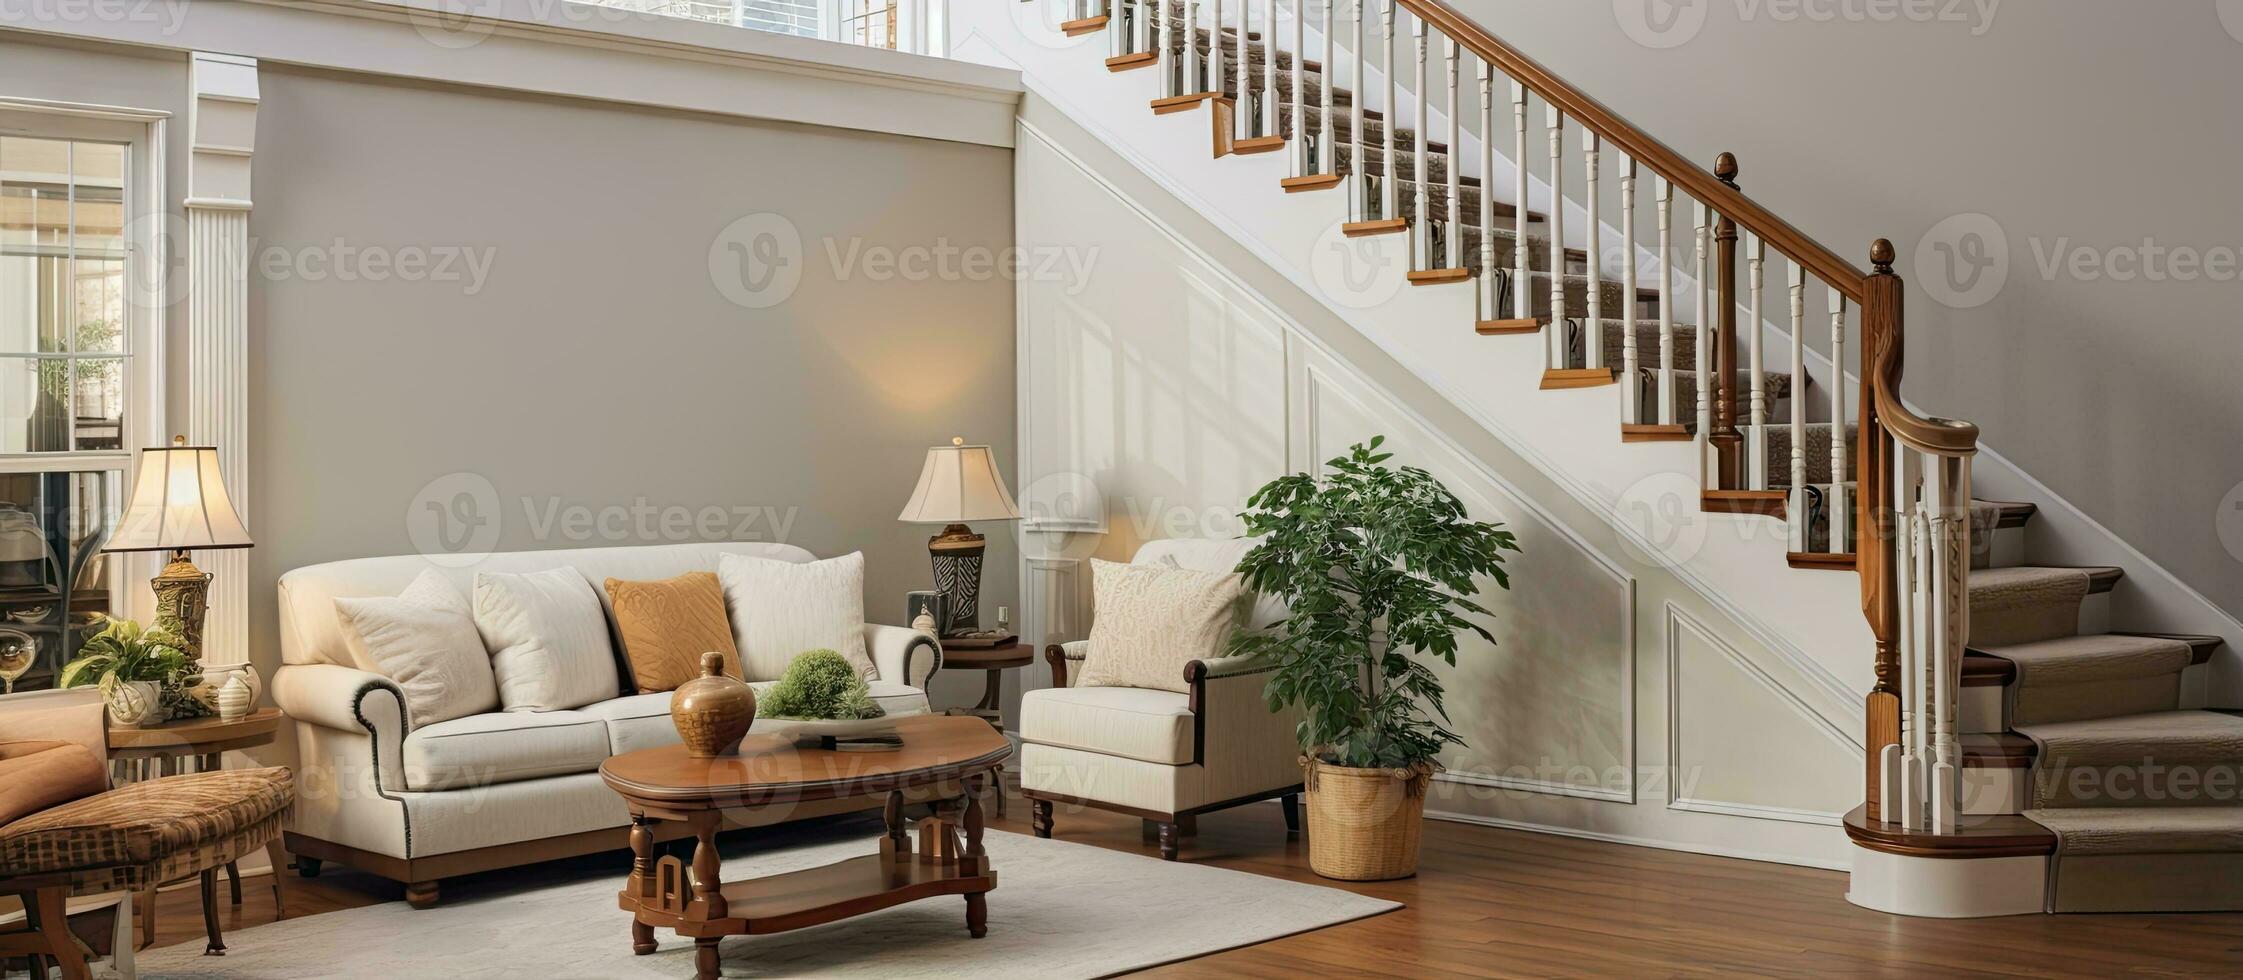 calorosamente decorado vivo quarto dentro uma encenado casa com Escadaria e mobília foto